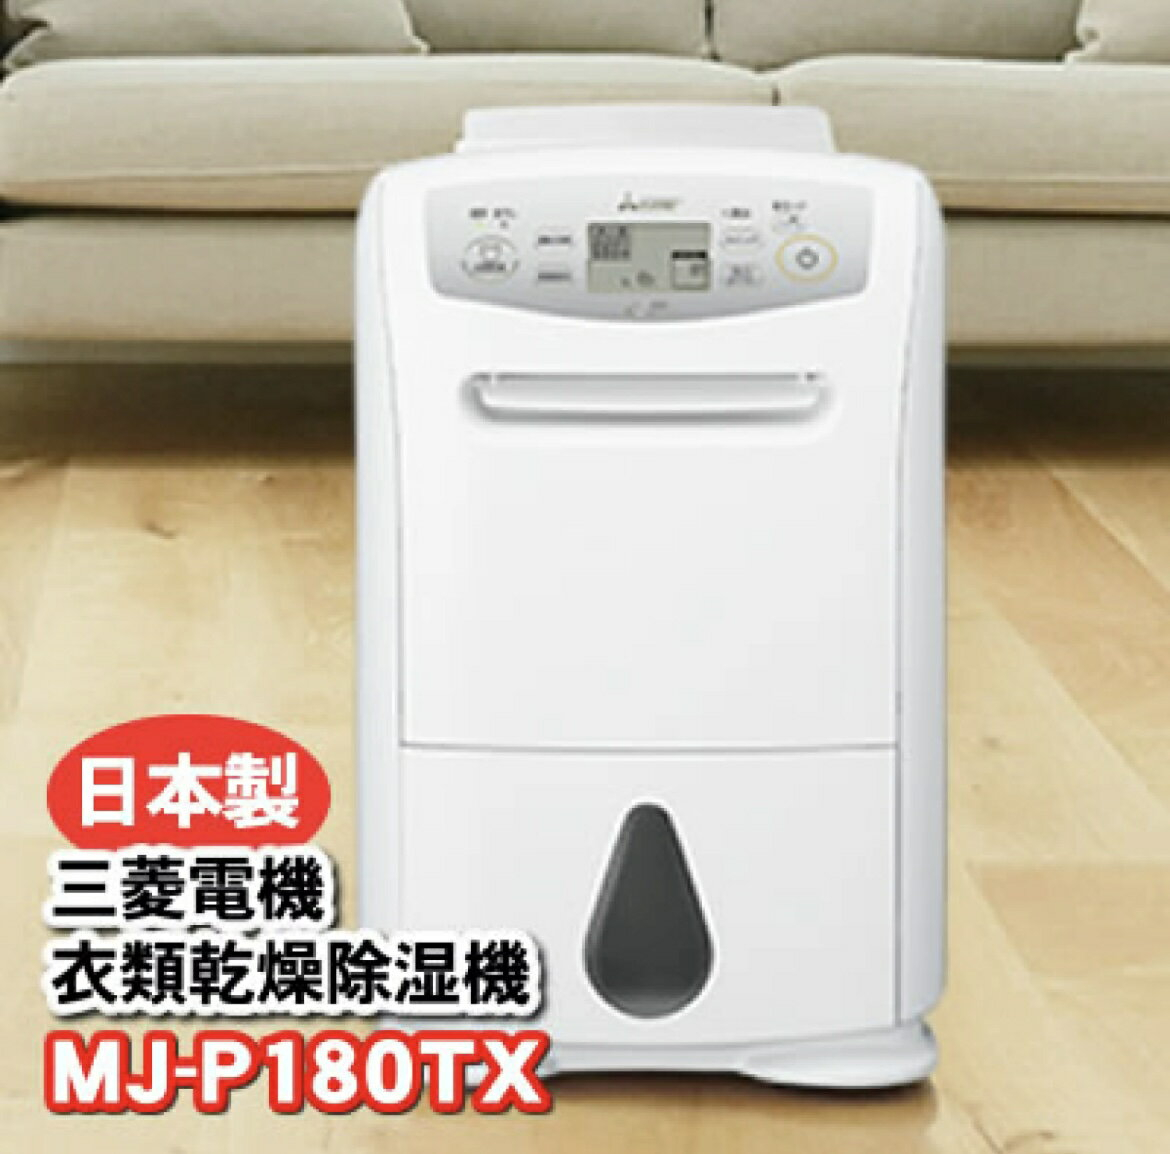 MITSUBISHI 三菱電機 MJ-P180RX 衣類乾燥除湿機-